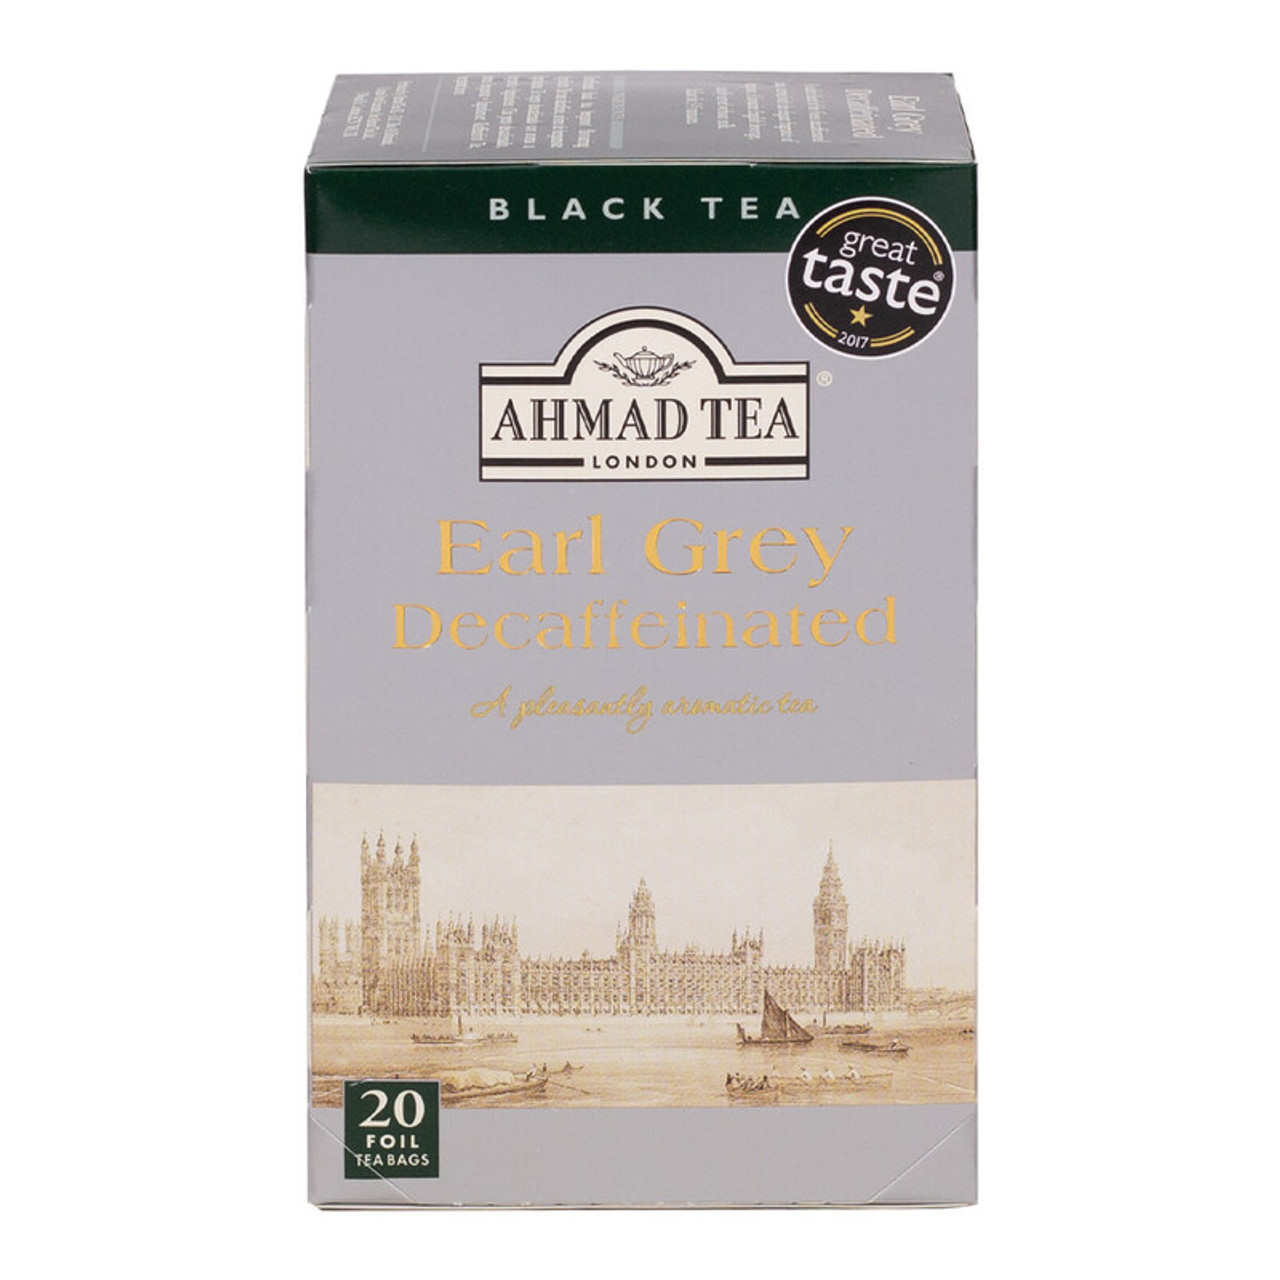 Ahmad Tea Decaffeinated – Ahmad Tea